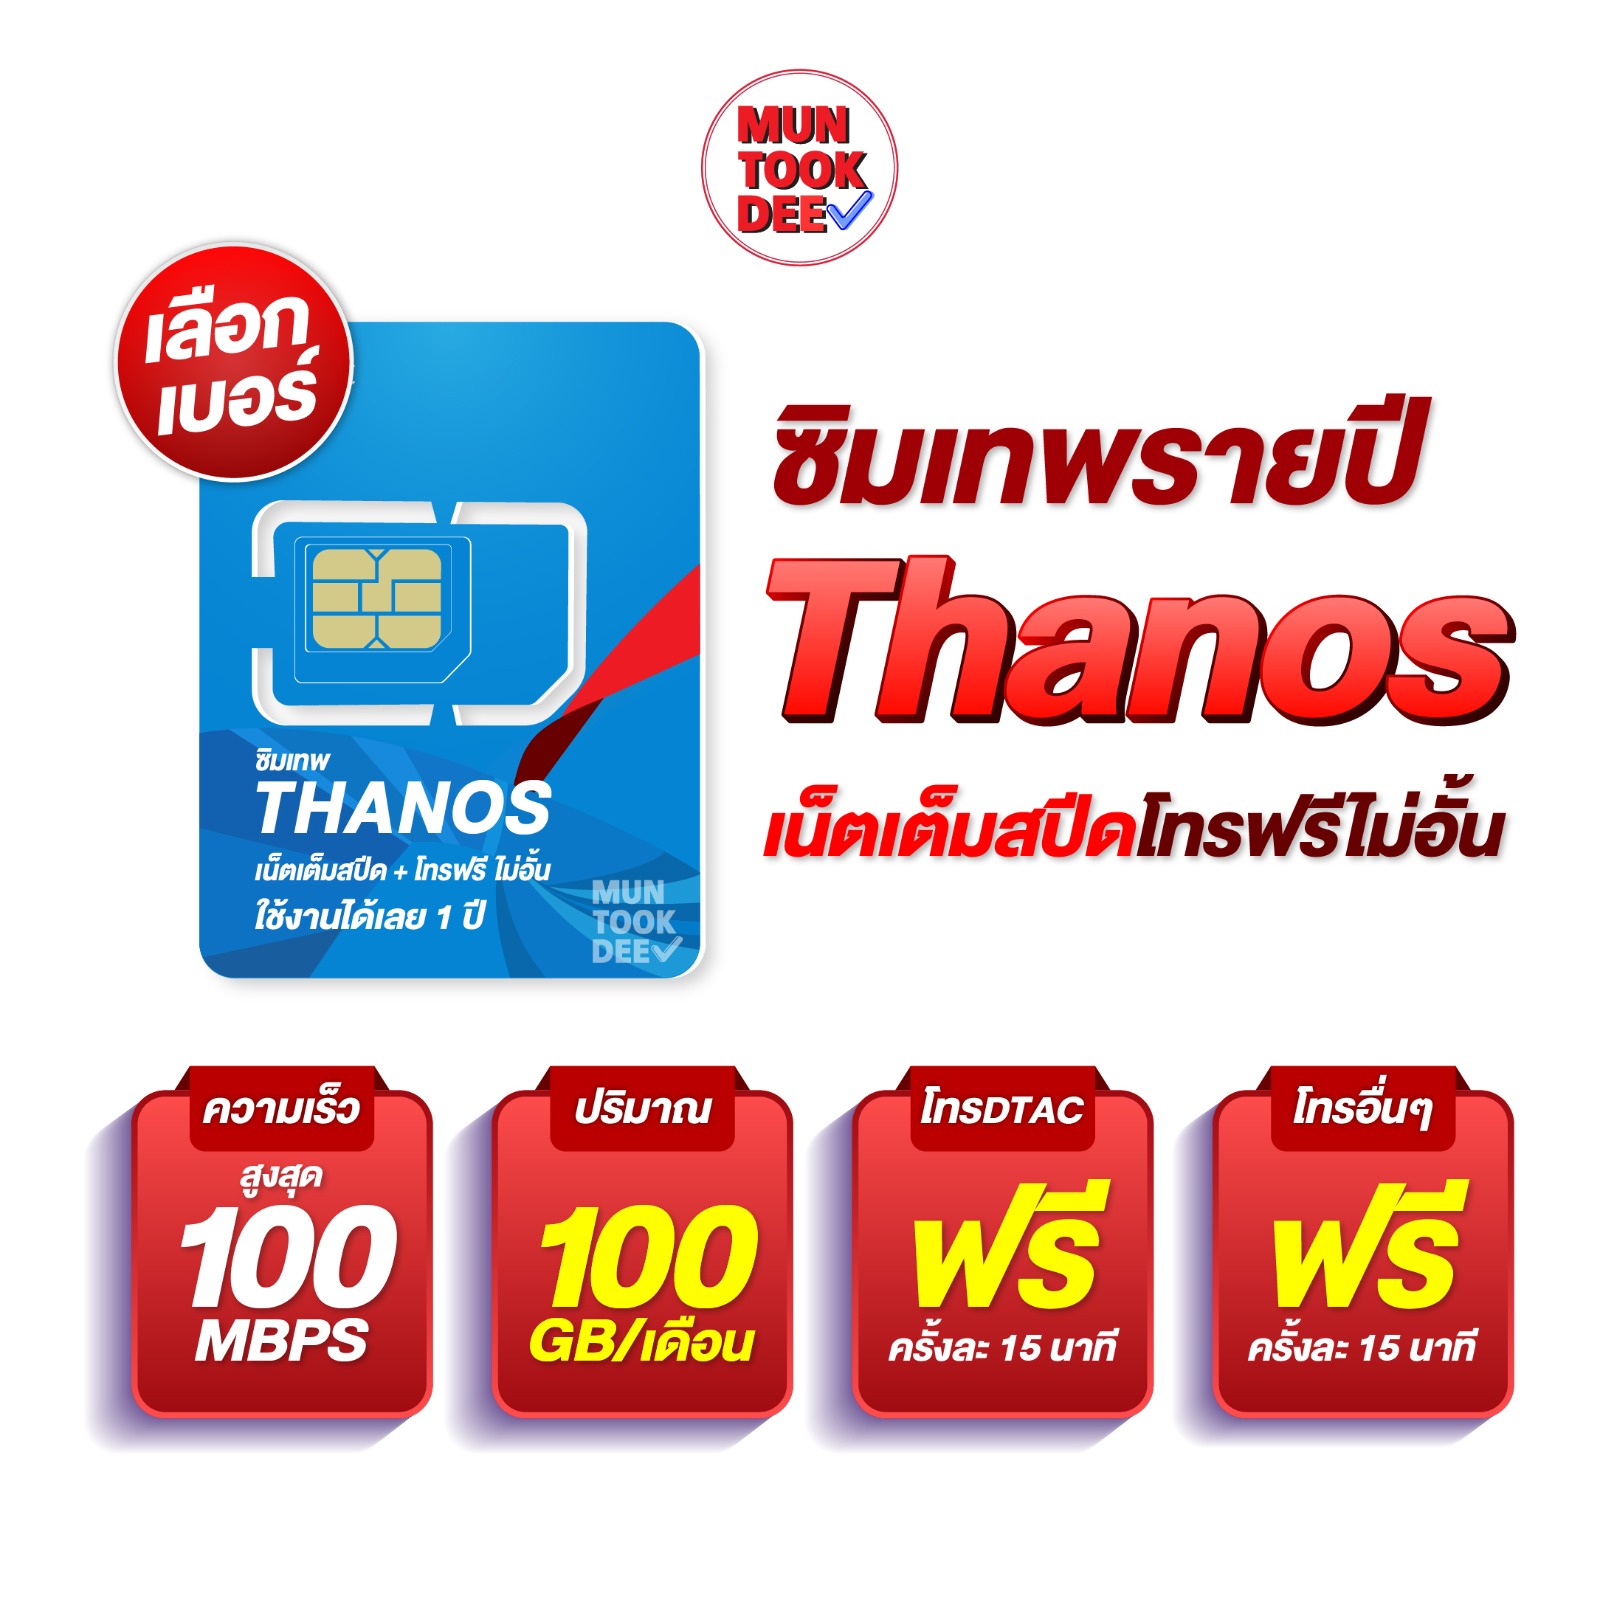 ซิมเทพ ธานอส Thanos ซิม MaxSpeed Max ดีแทค 100mbps 100GB/เดือน โทรฟรี ทุกเครือข่าย ais dtac true คงกระพัน มันถูกดี